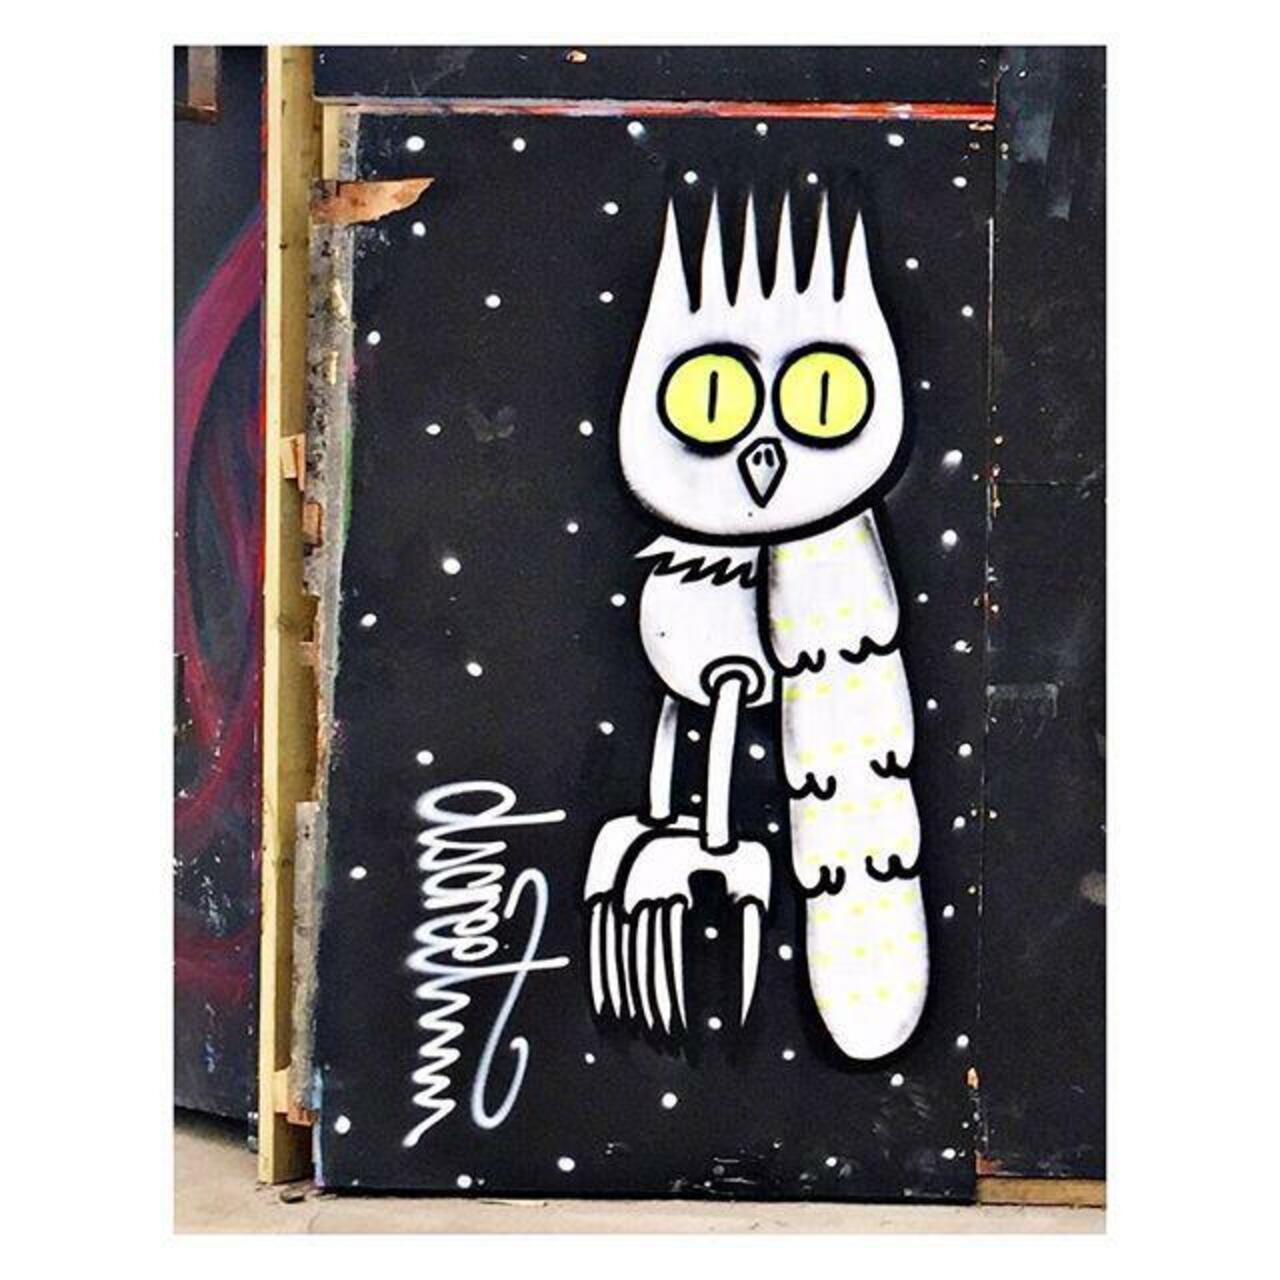 Owl are dope by @dscreetsheet #streetart #graffiti #dscreetsheet #owl #bird #spraypaint #paint #wall #mural #wallmu… http://t.co/32LFkadKyI